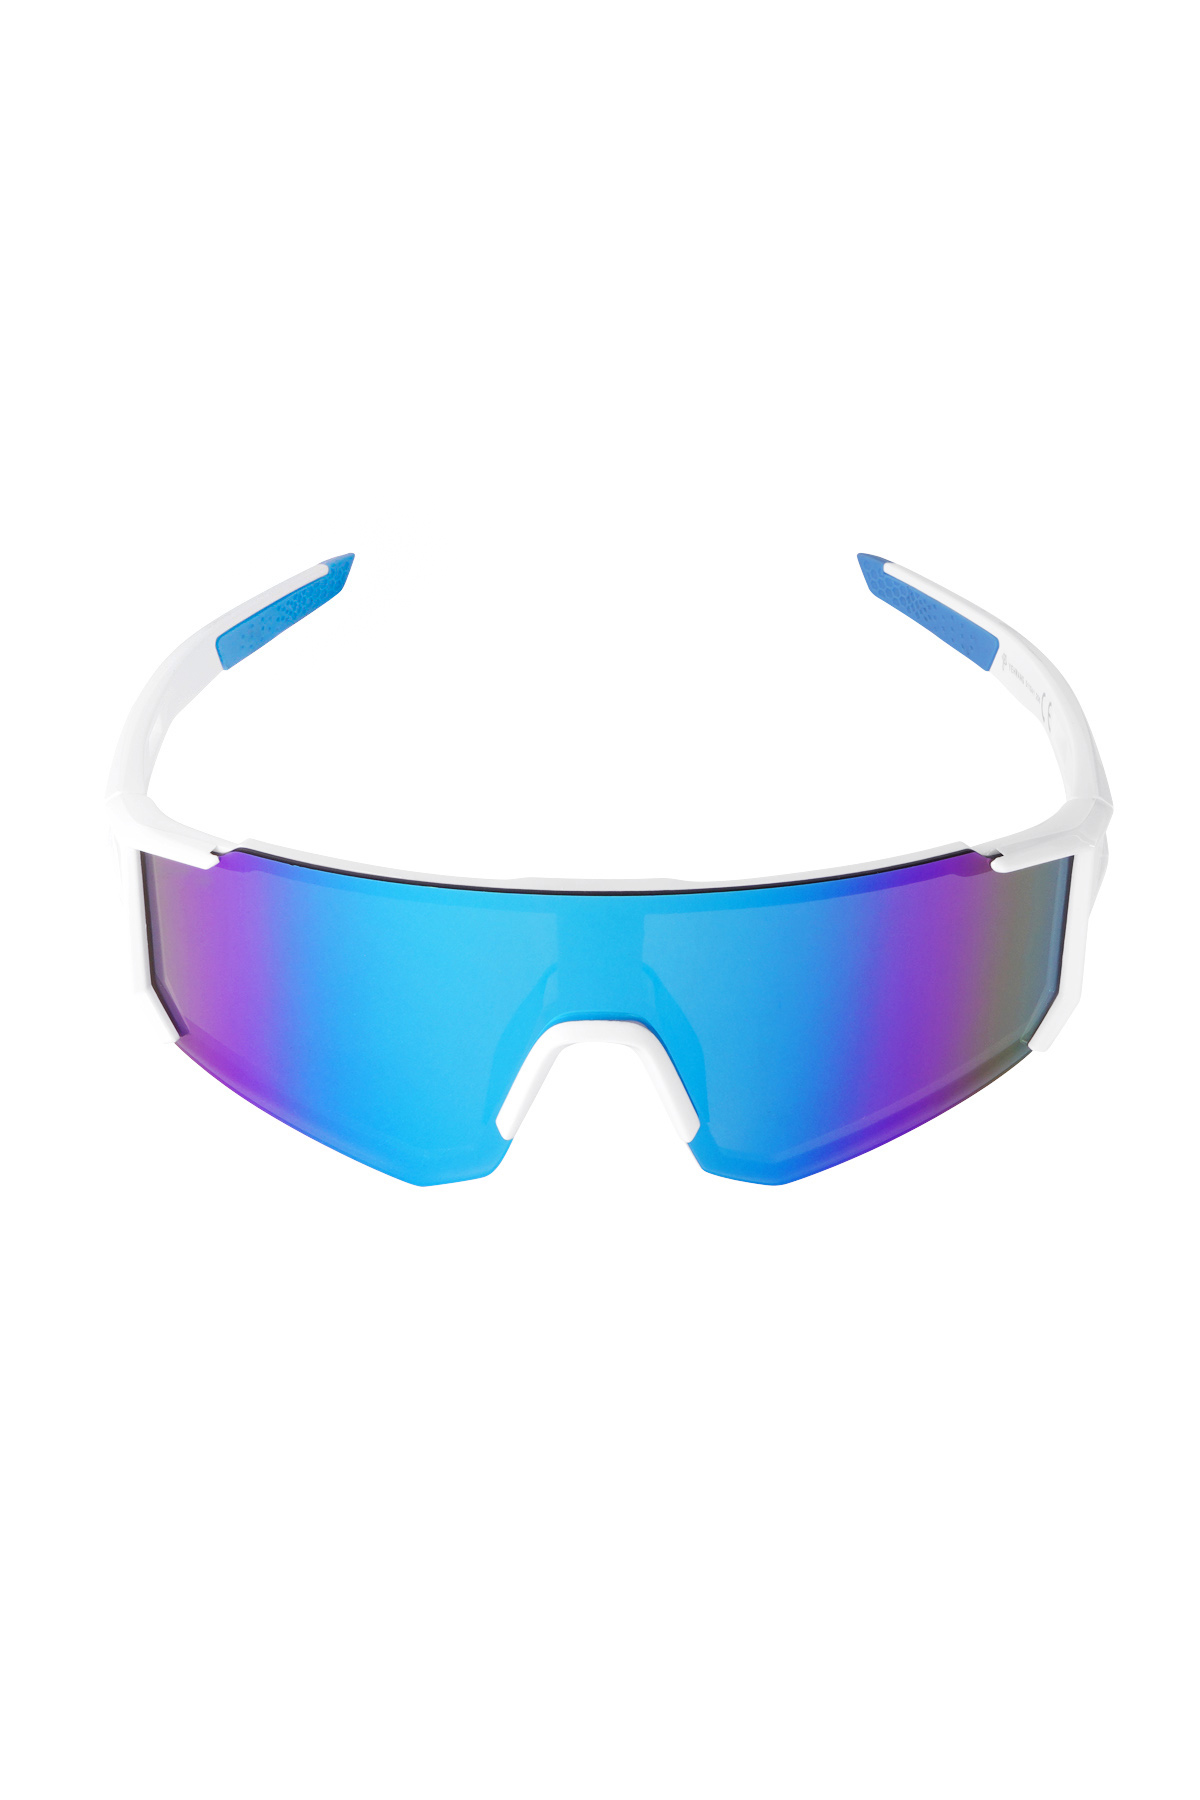 Sunglasses future - white/blue Picture5